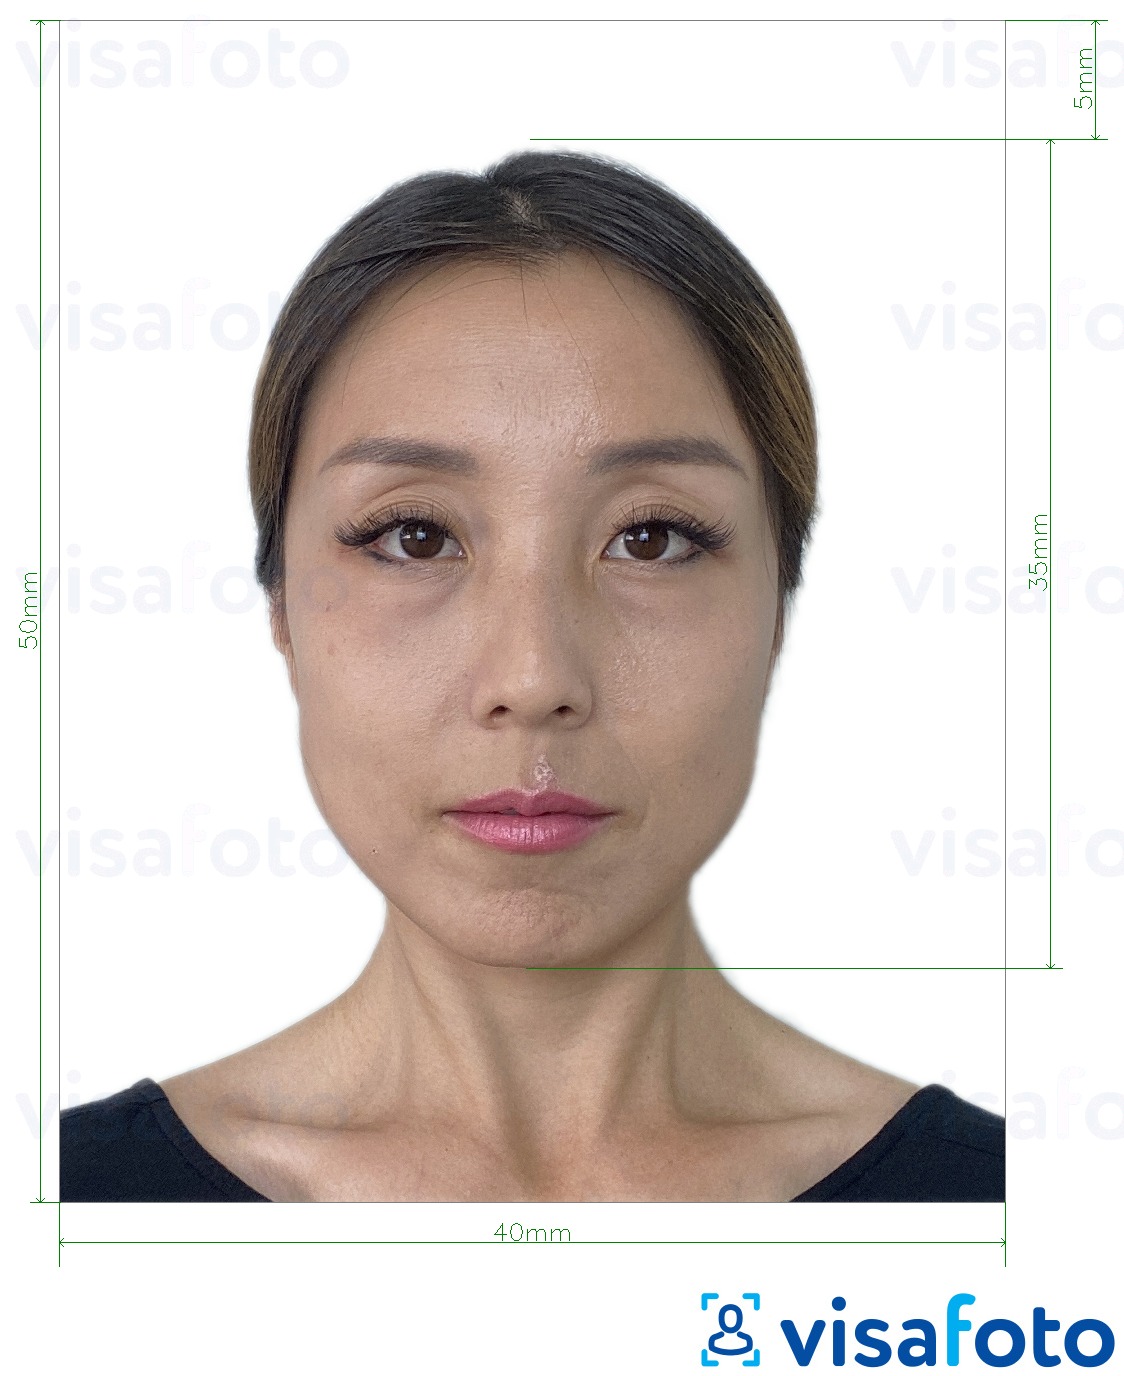 Tam boyut belirtimi olan Hong Kong Visa 40x50 mm (4x5 cm) için fotoğraf örneği